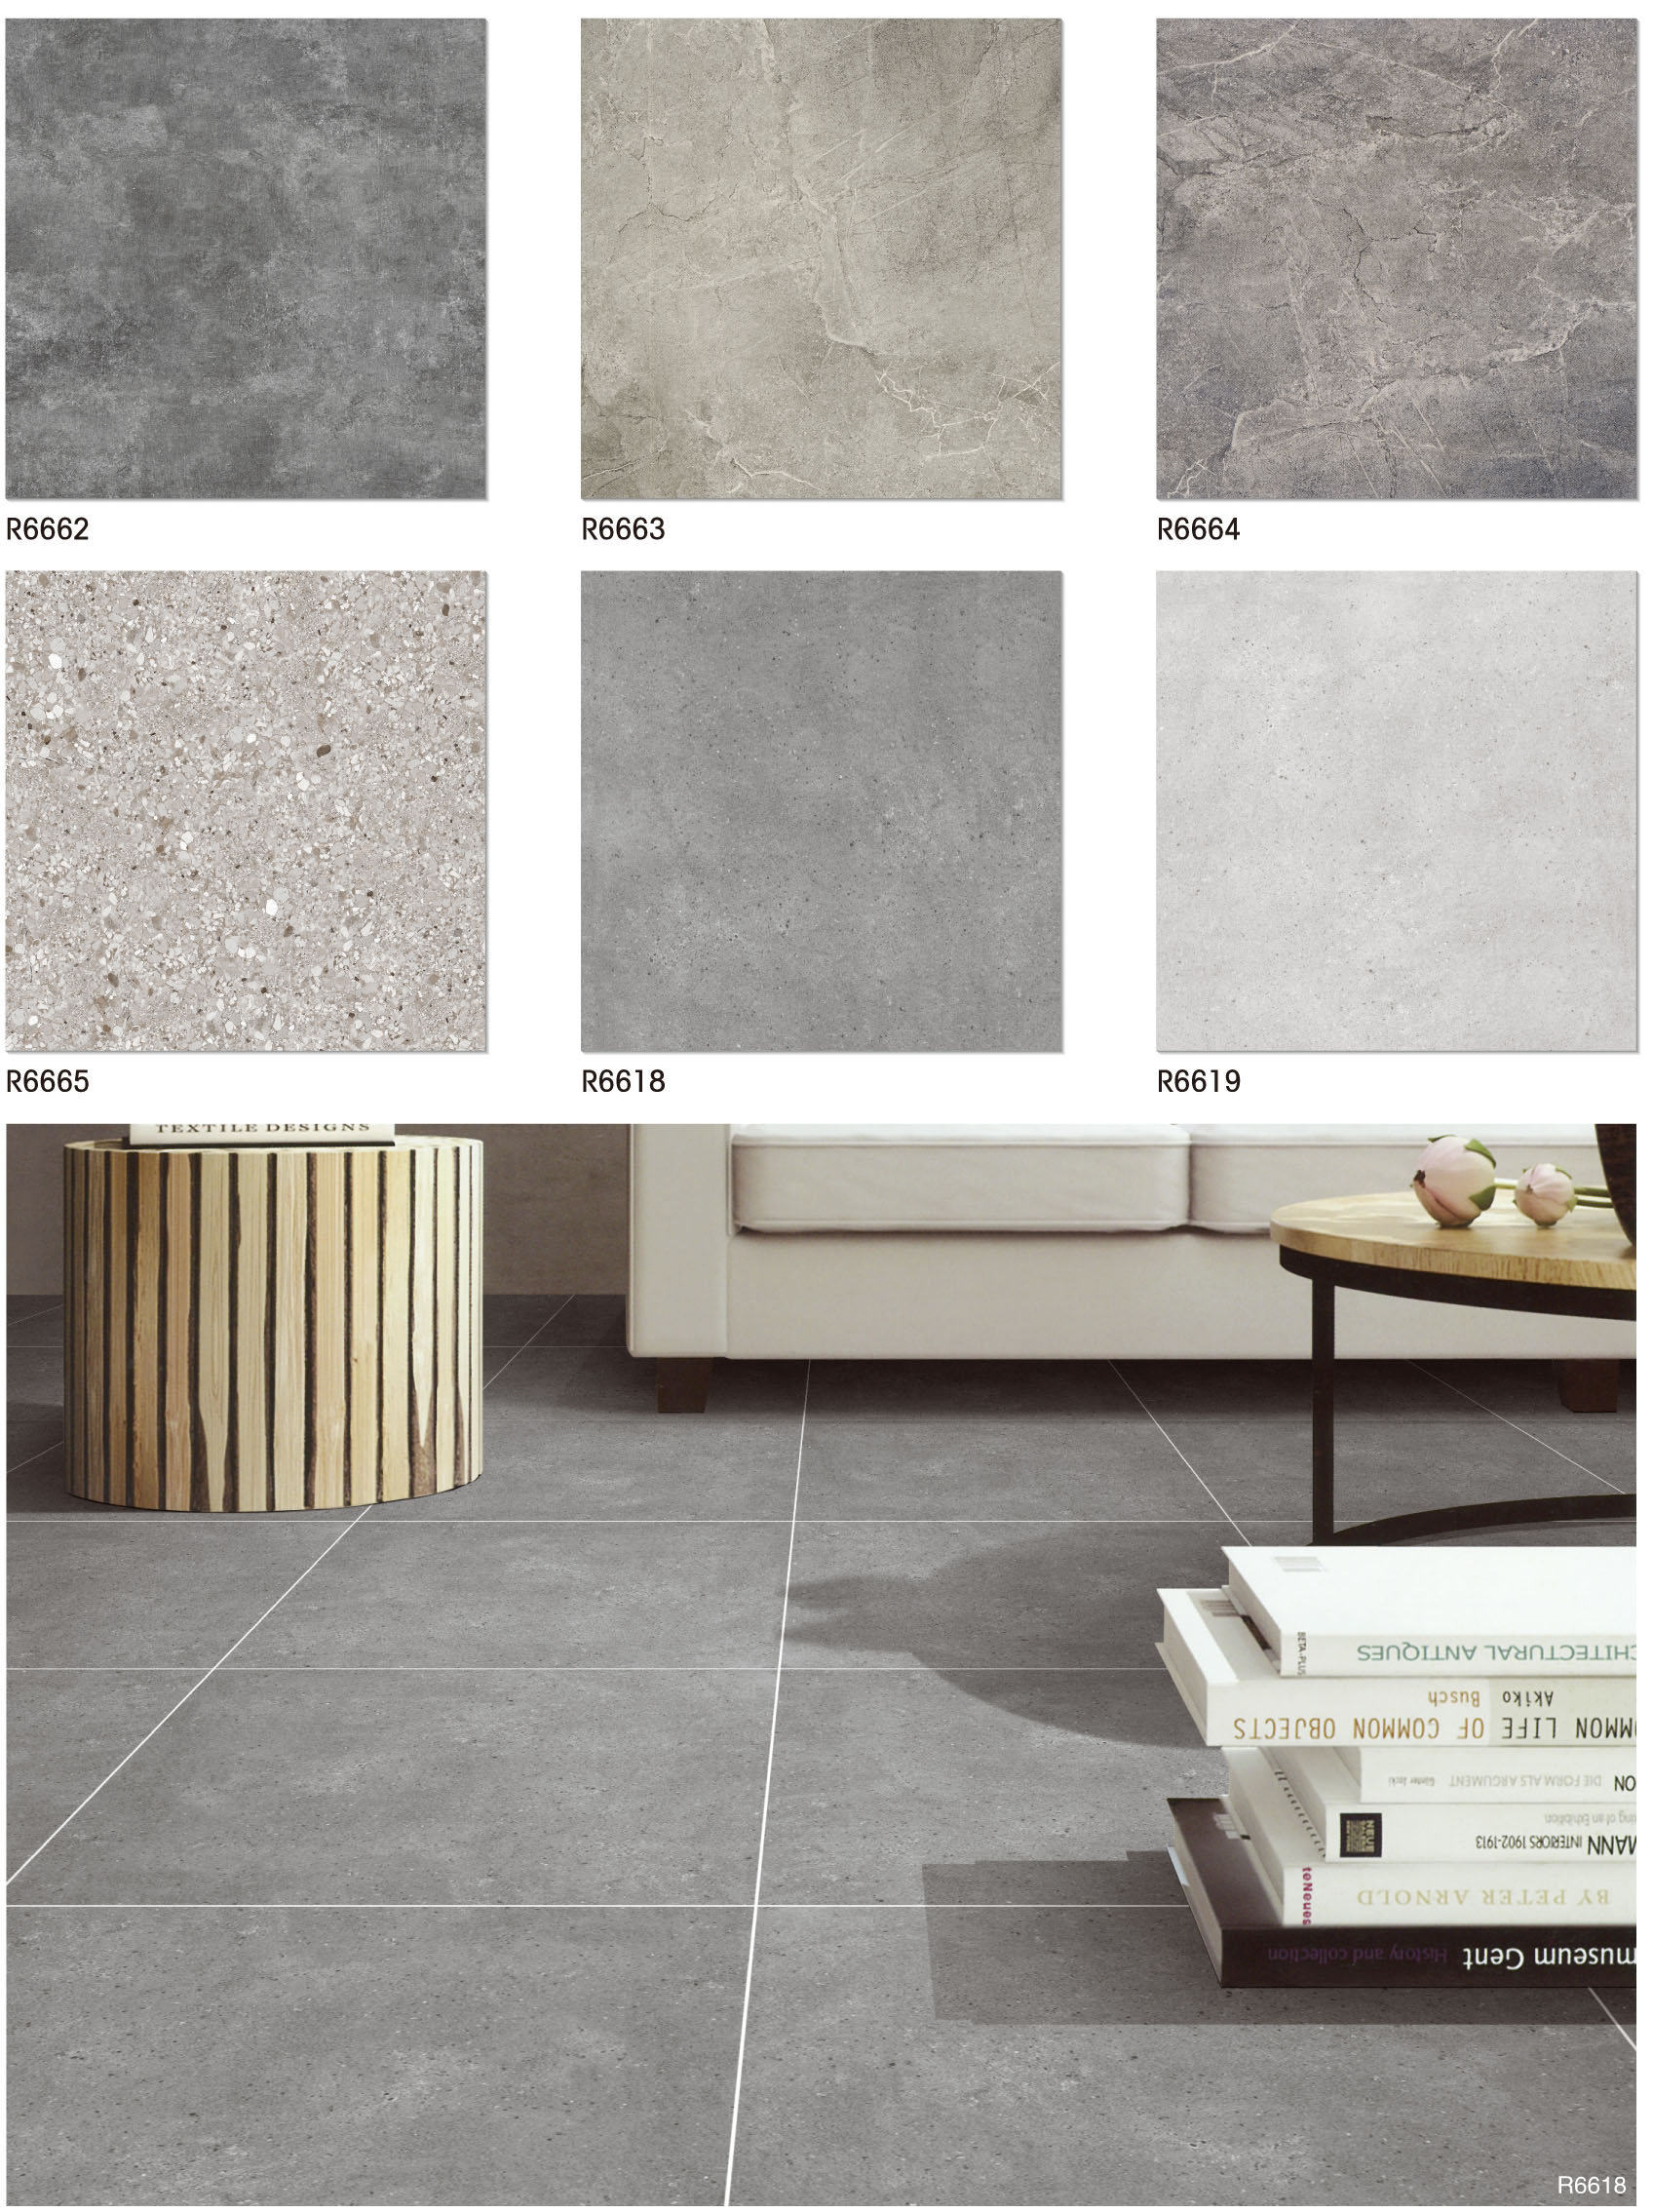 Rustic floor tile 600x600mm -3